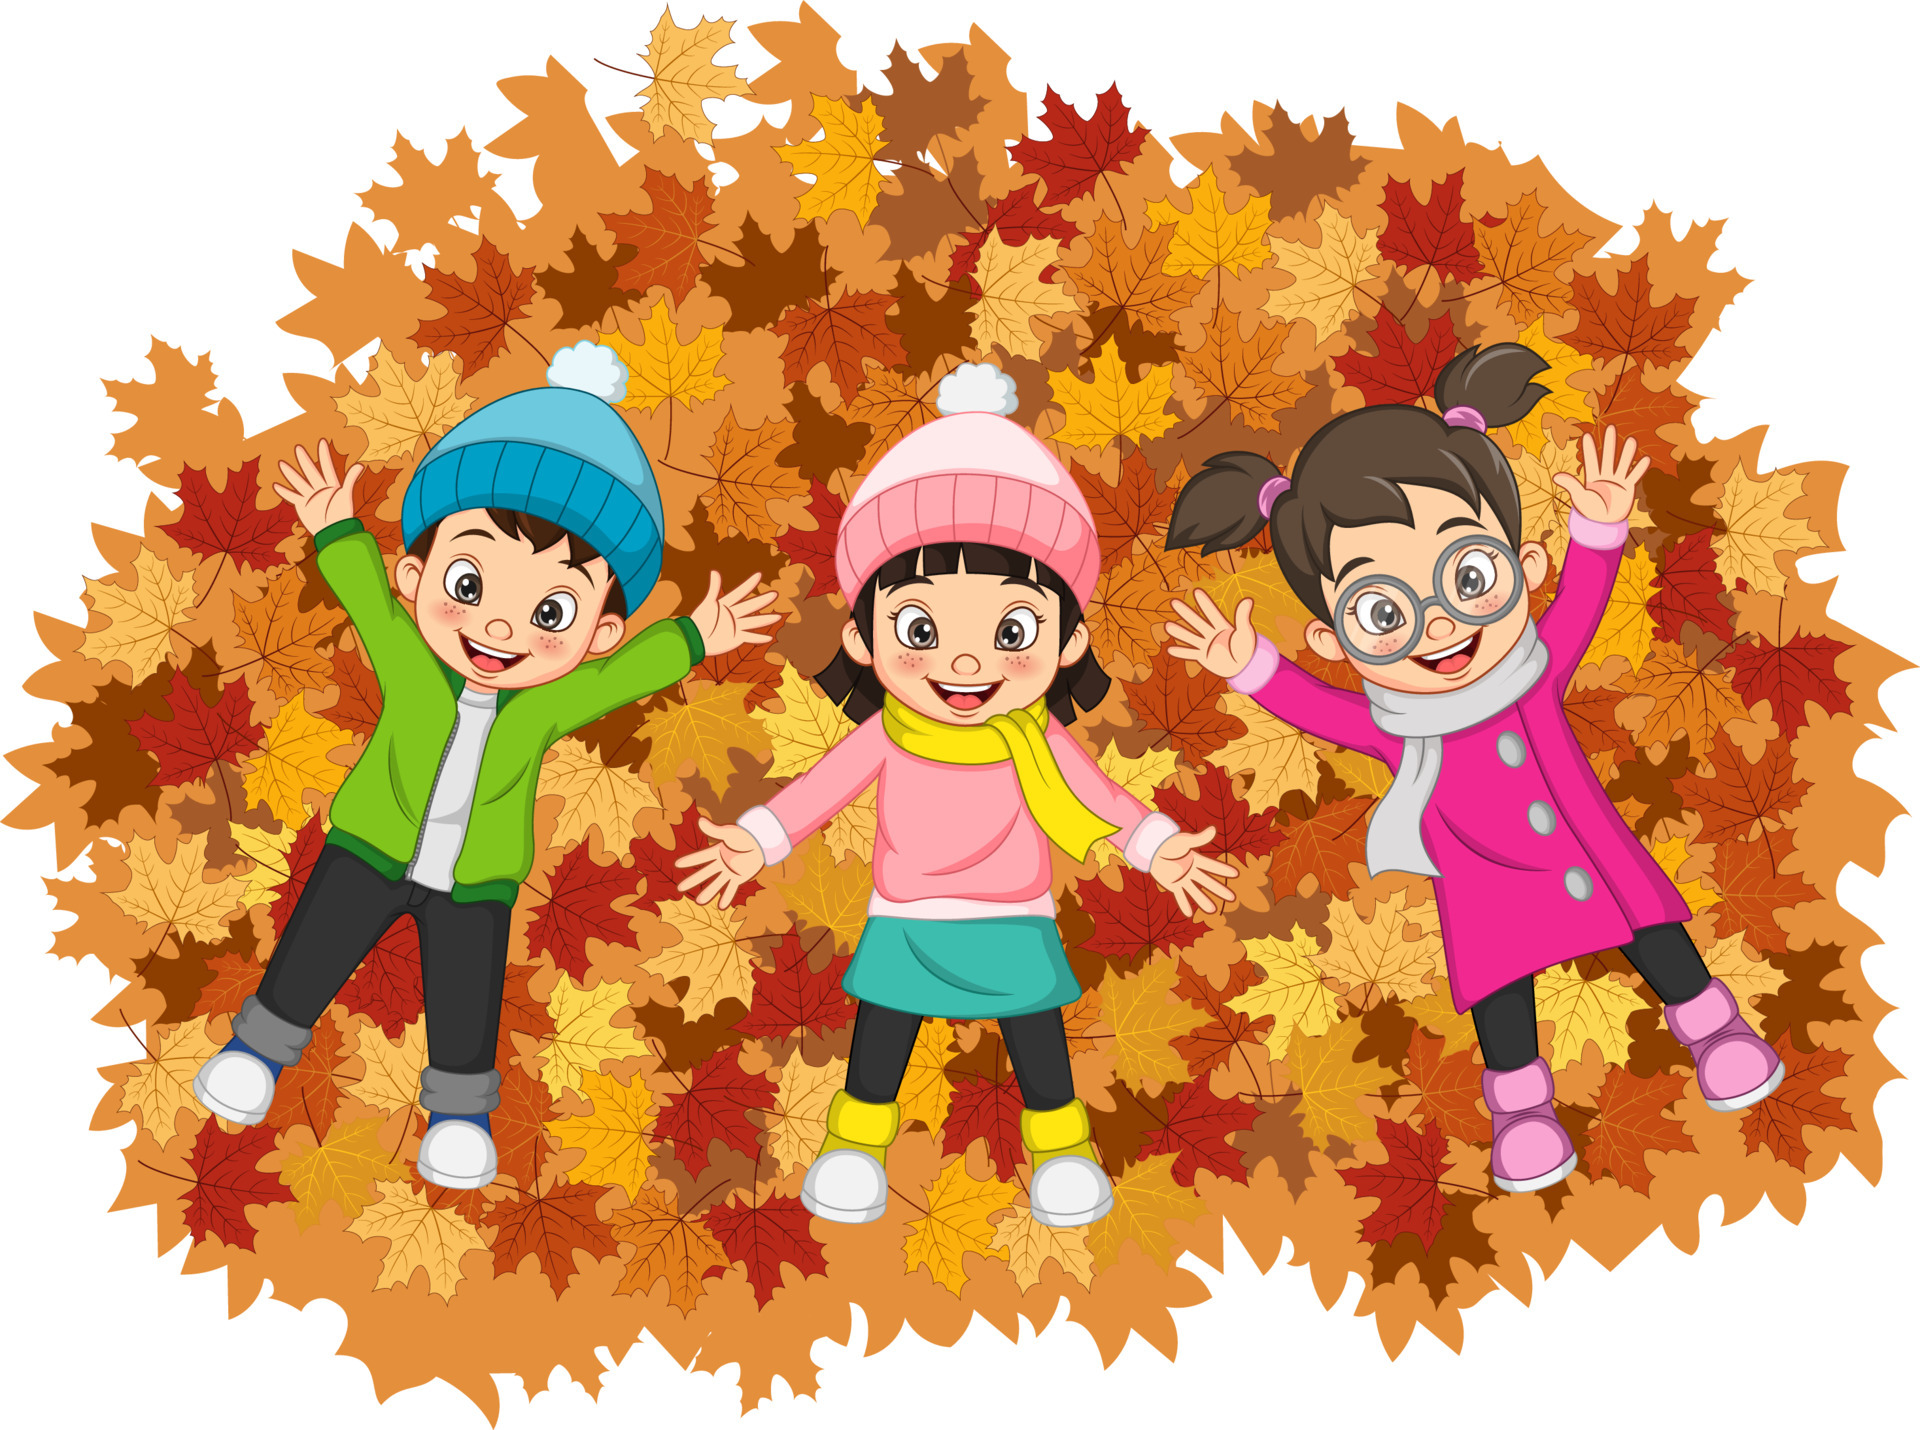 https://static.vecteezy.com/ti/vecteur-libre/p3/4993746-dessin-anime-enfants-heureux-couche-sur-feuilles-d-automne-colorees-gratuit-vectoriel.jpg